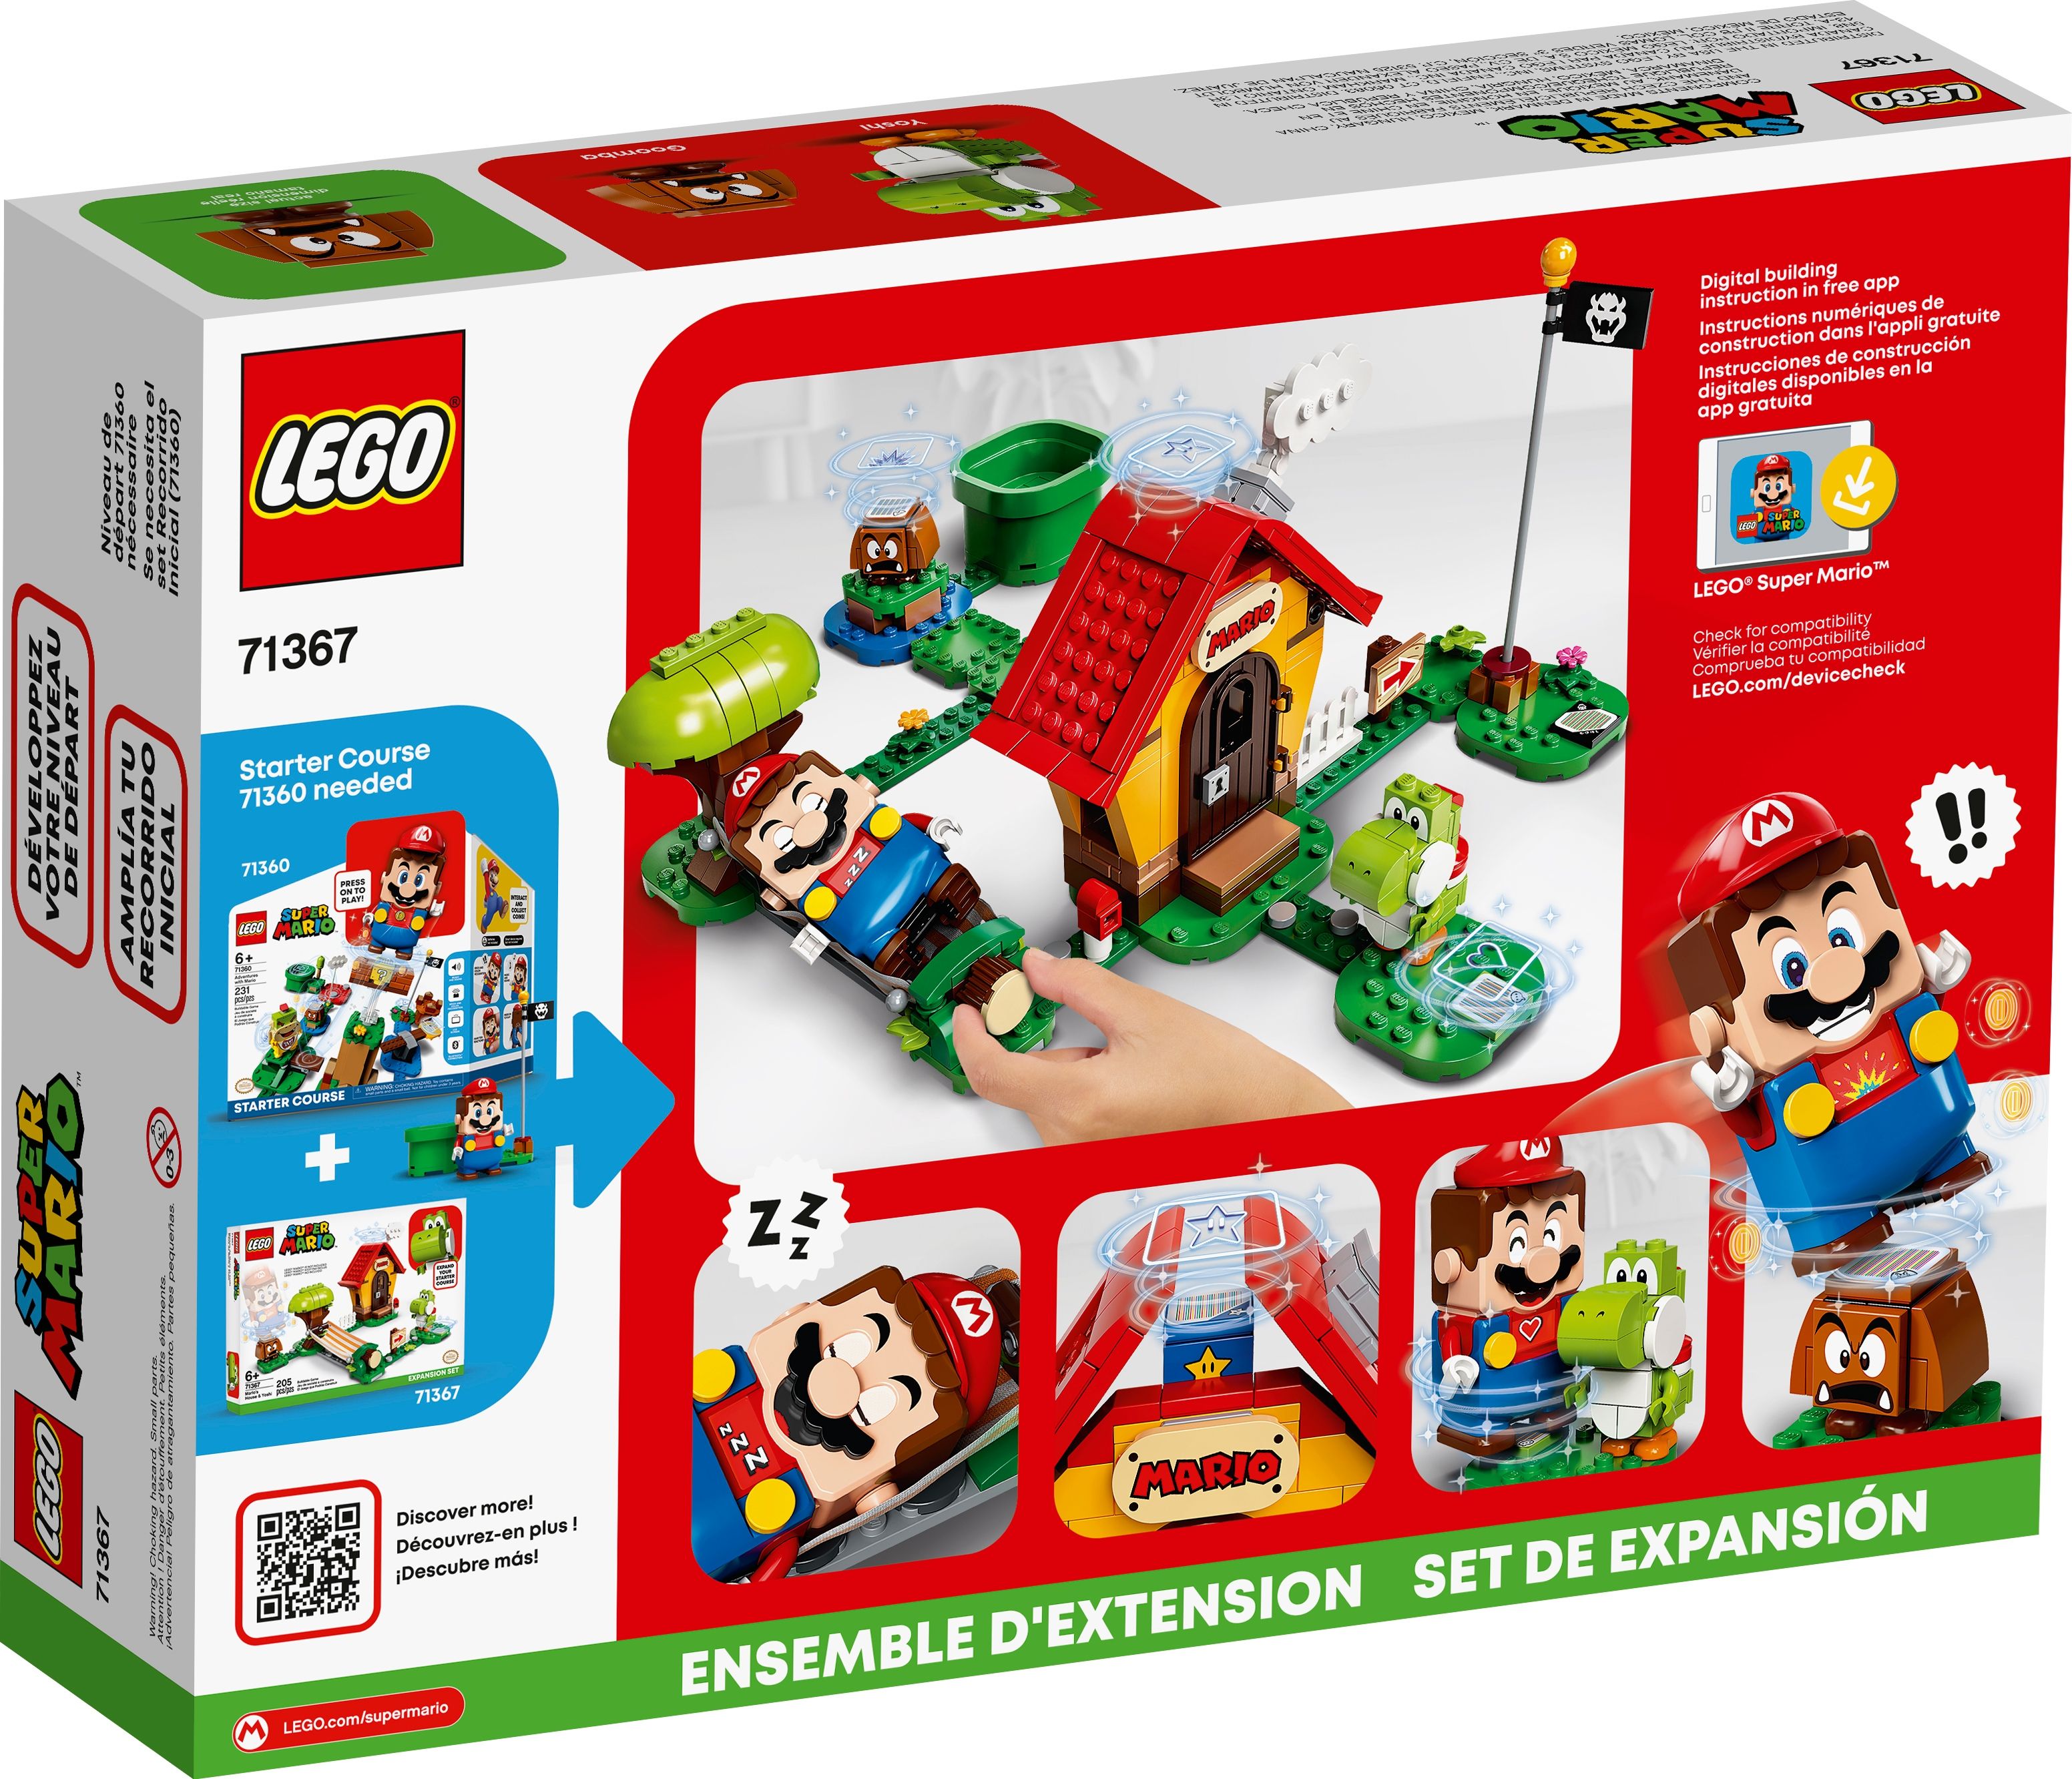 LEGO Super Mario 71367 Marios Haus und Yoshi – Erweiterungsset LEGO_71367_alt5.jpg